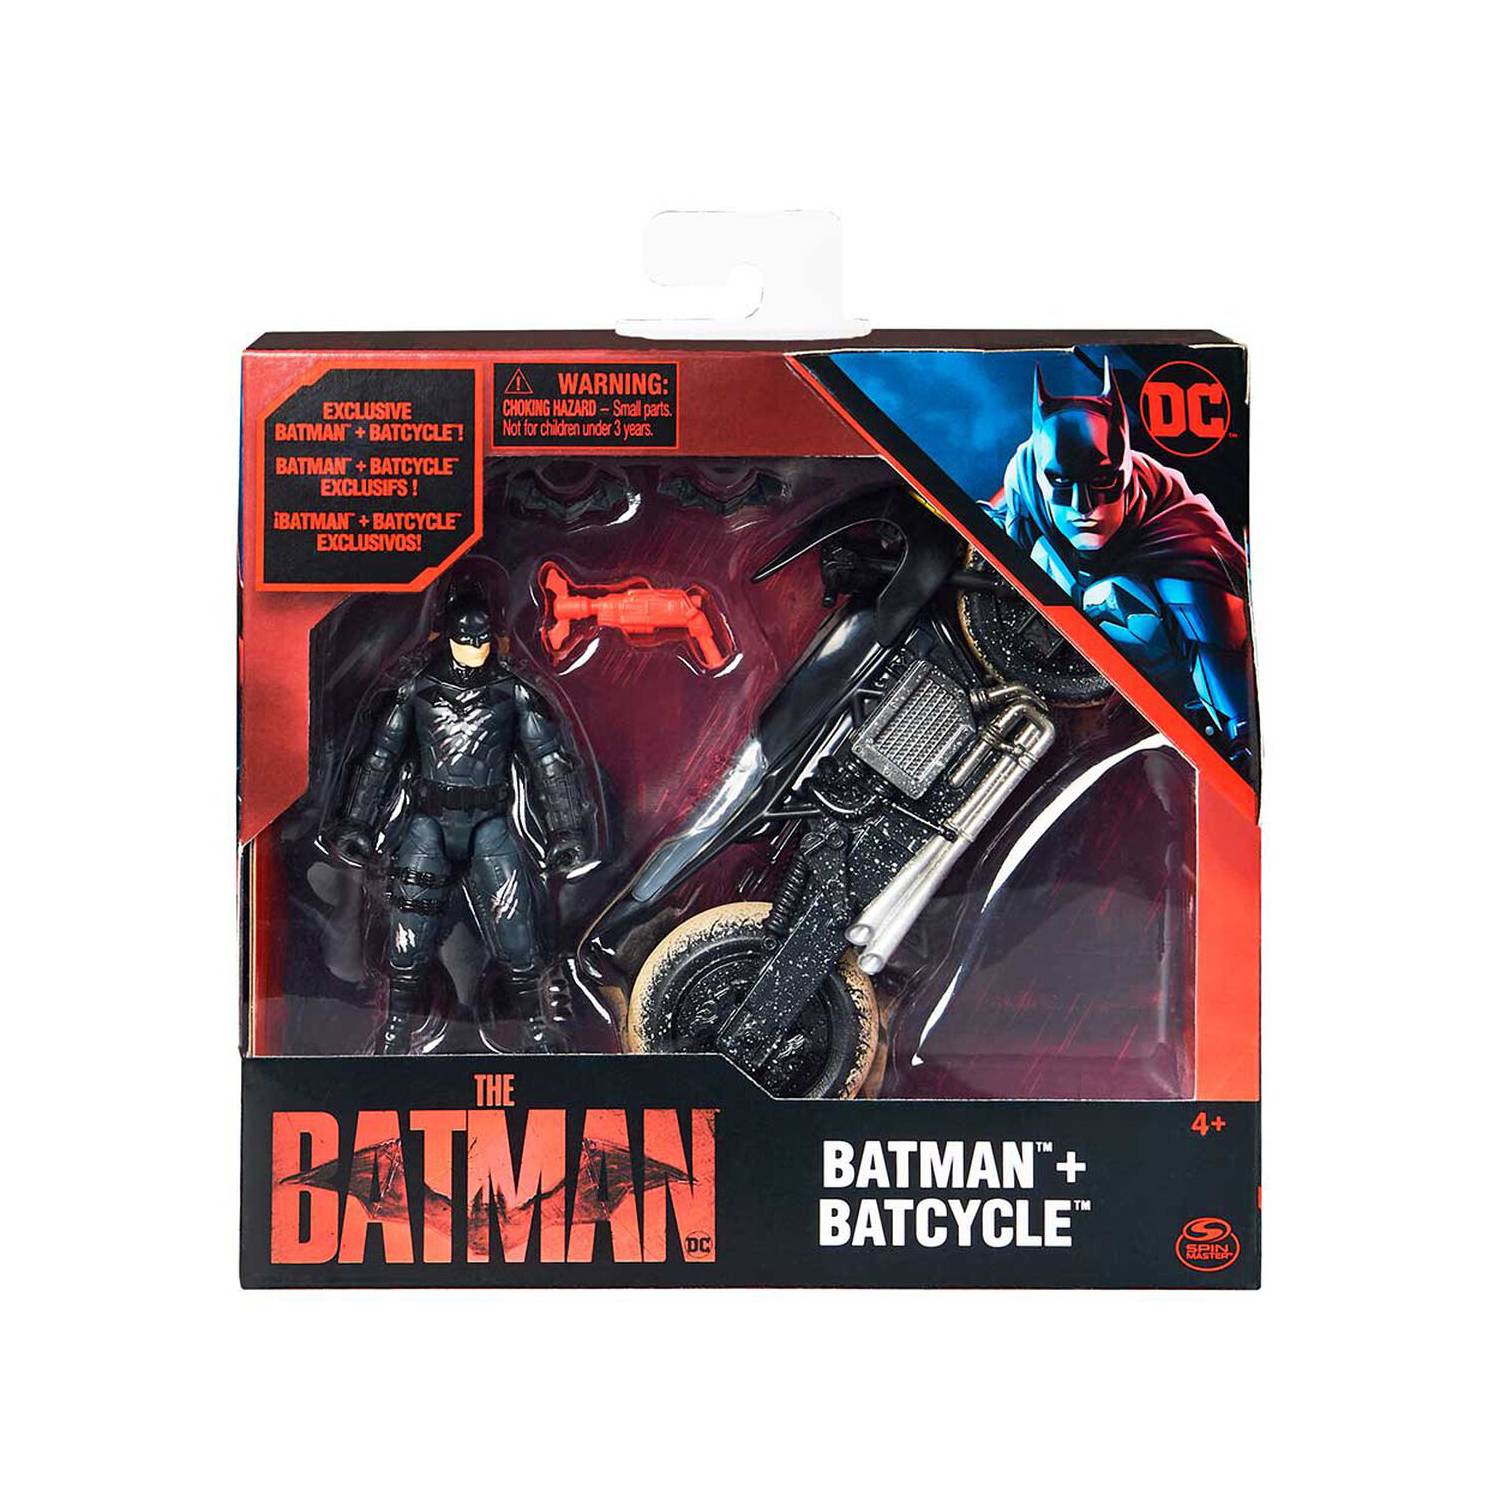 Imexporta trae la exclusiva nueva colección de juguetes Batman para este  Día del Niño